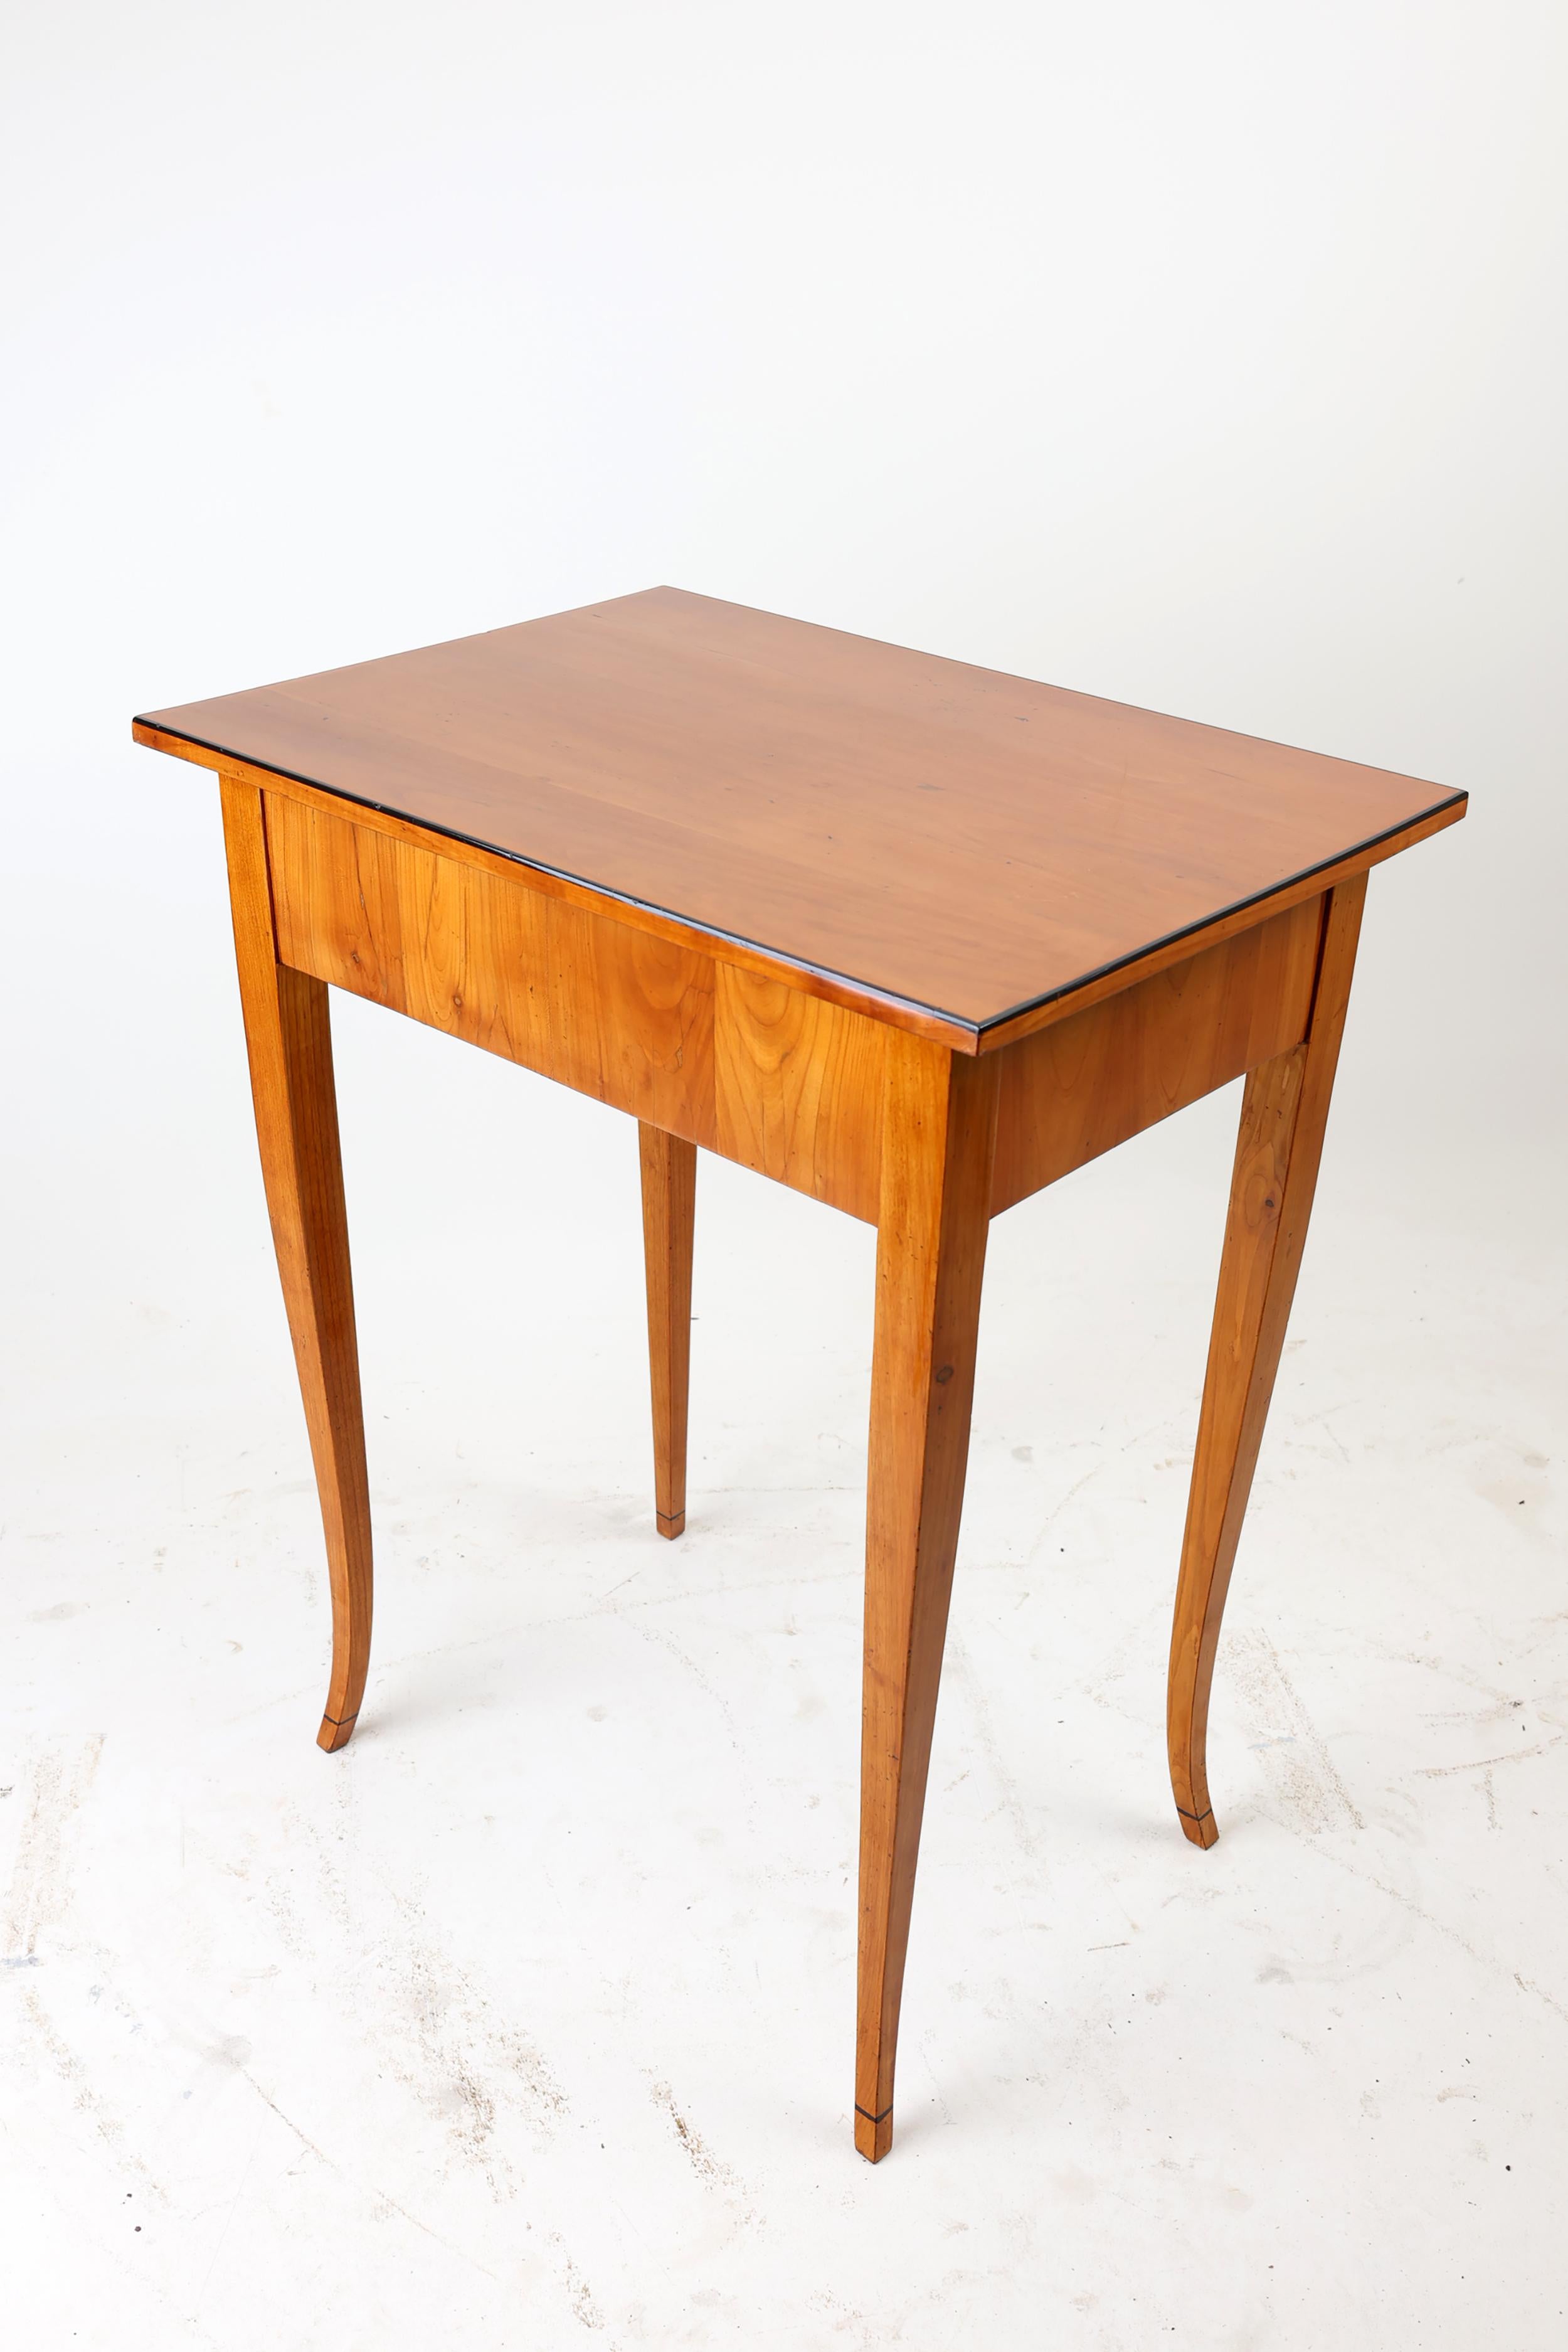 German Early 19th Century Biedermeier Side Table For Sale